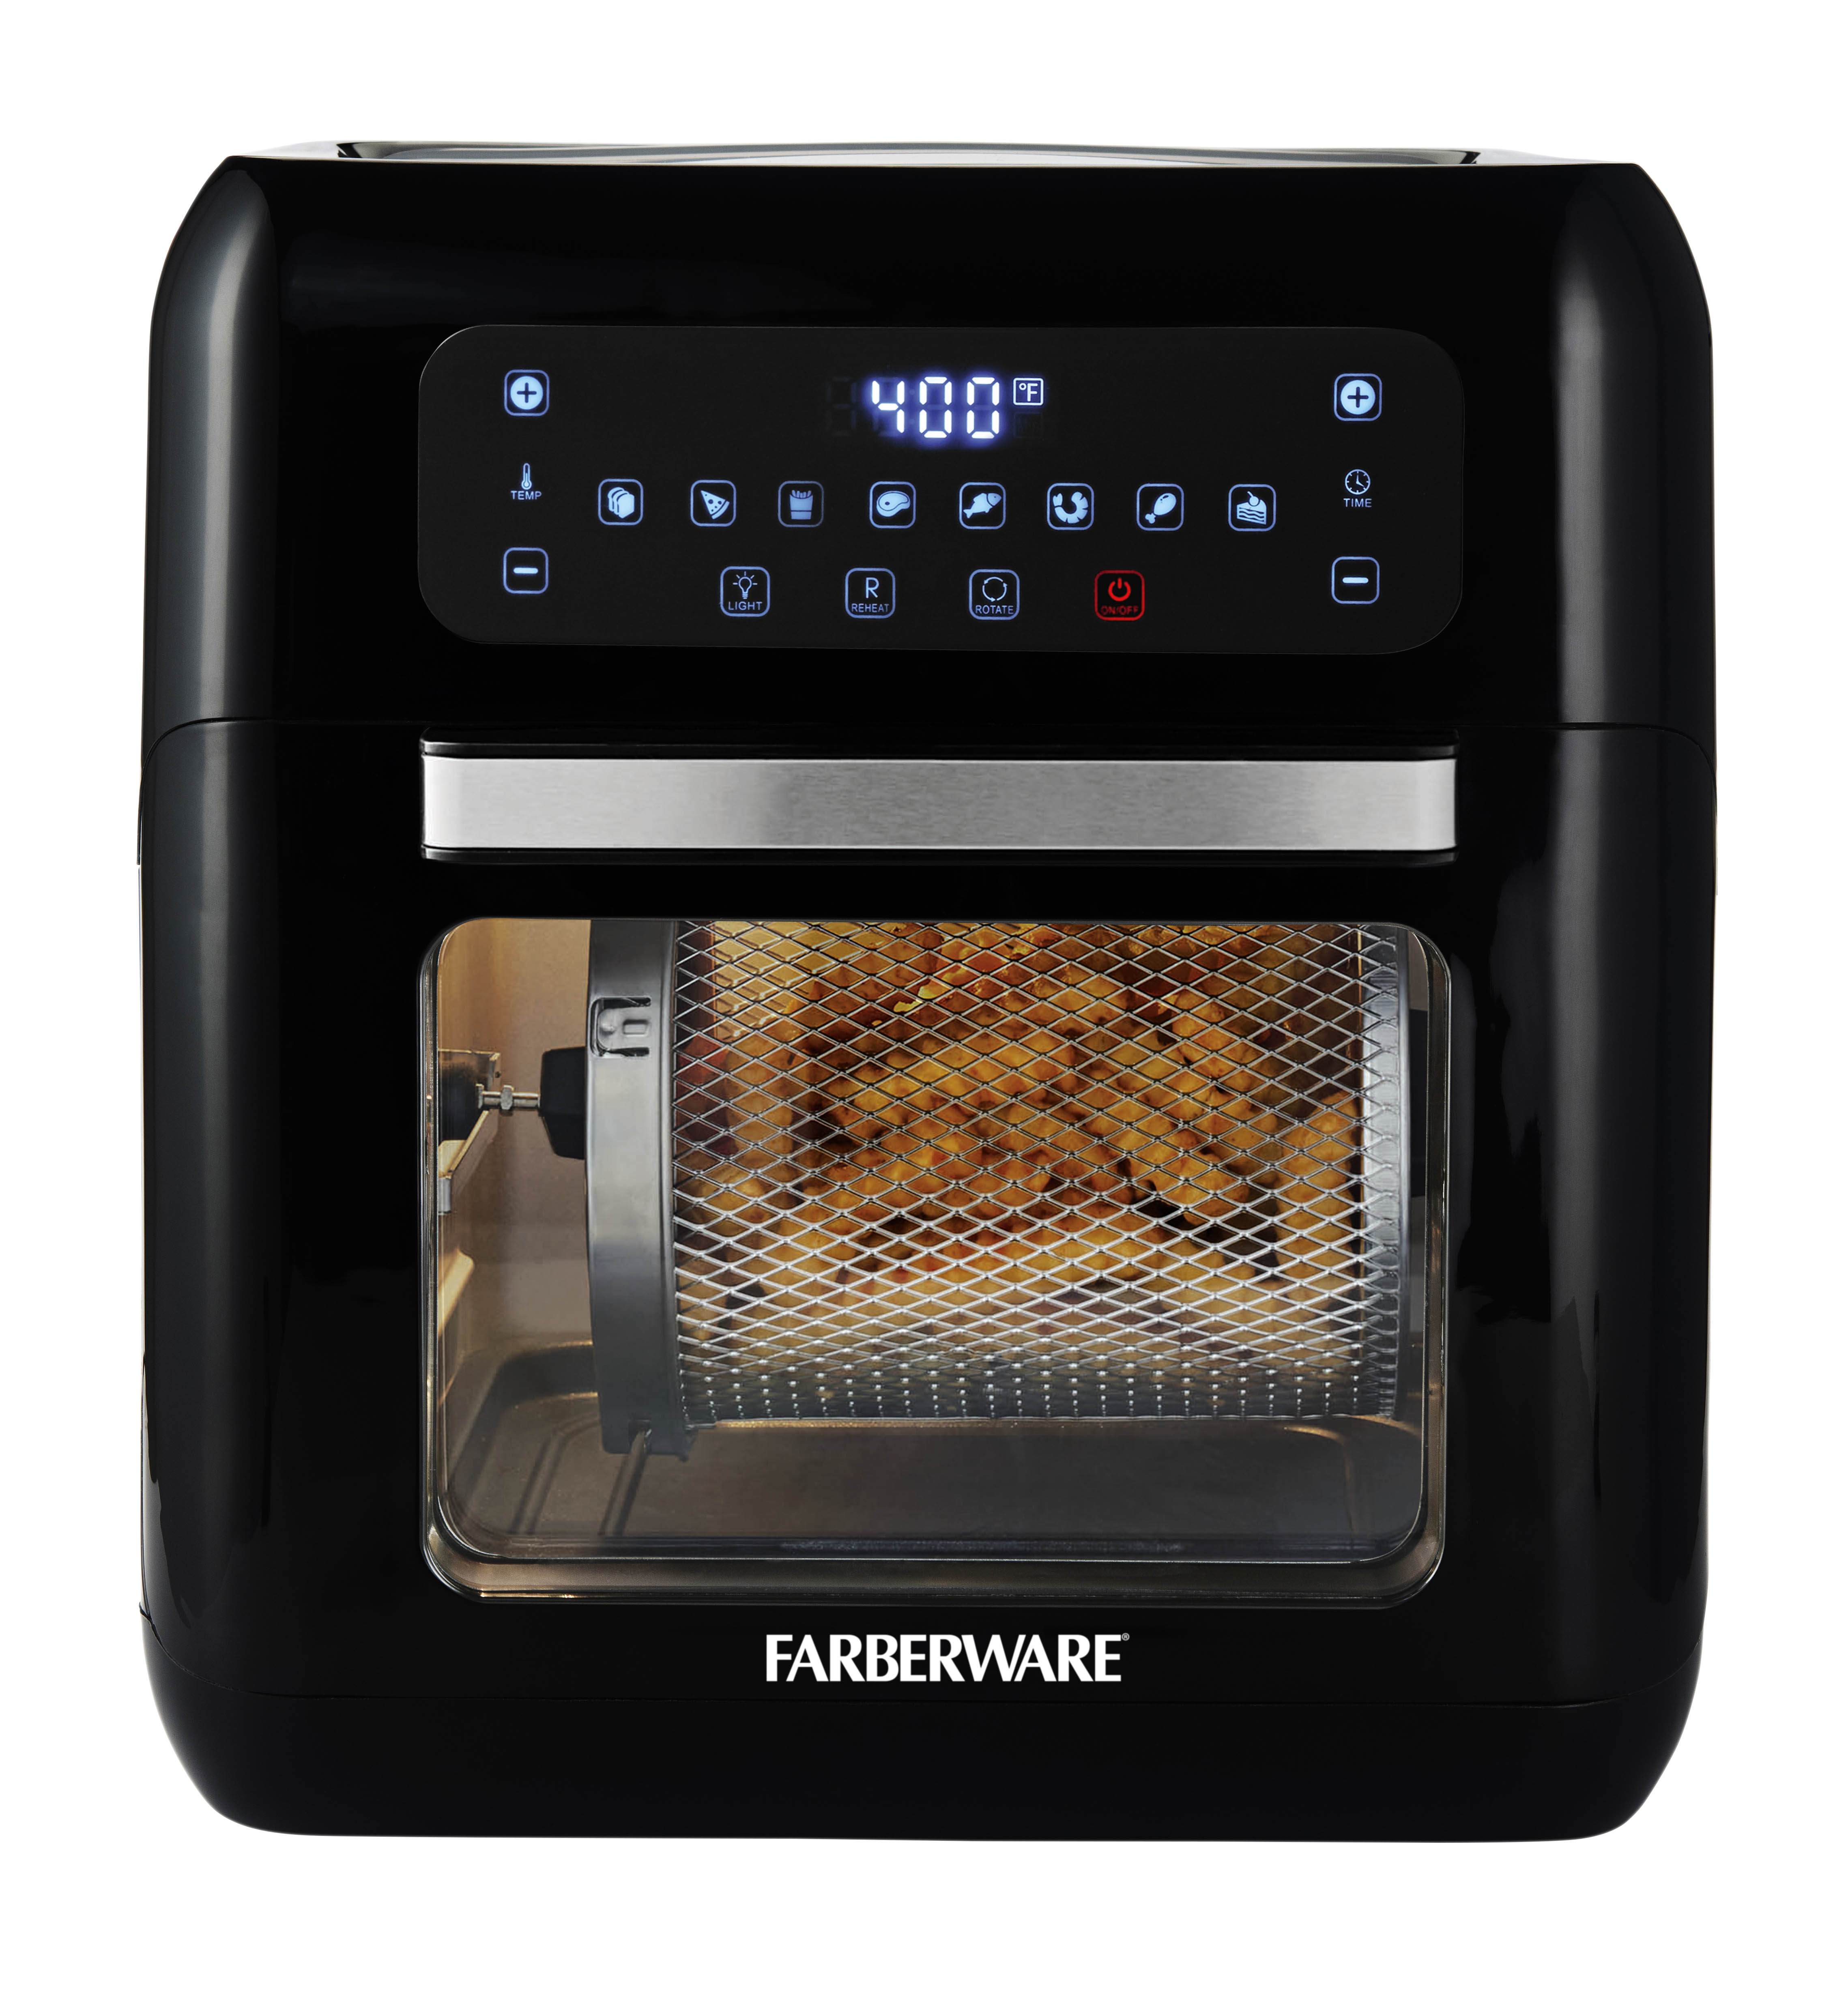 Farberware 6-Quart Digital XL Air Fryer Oven, Black - image 5 of 5